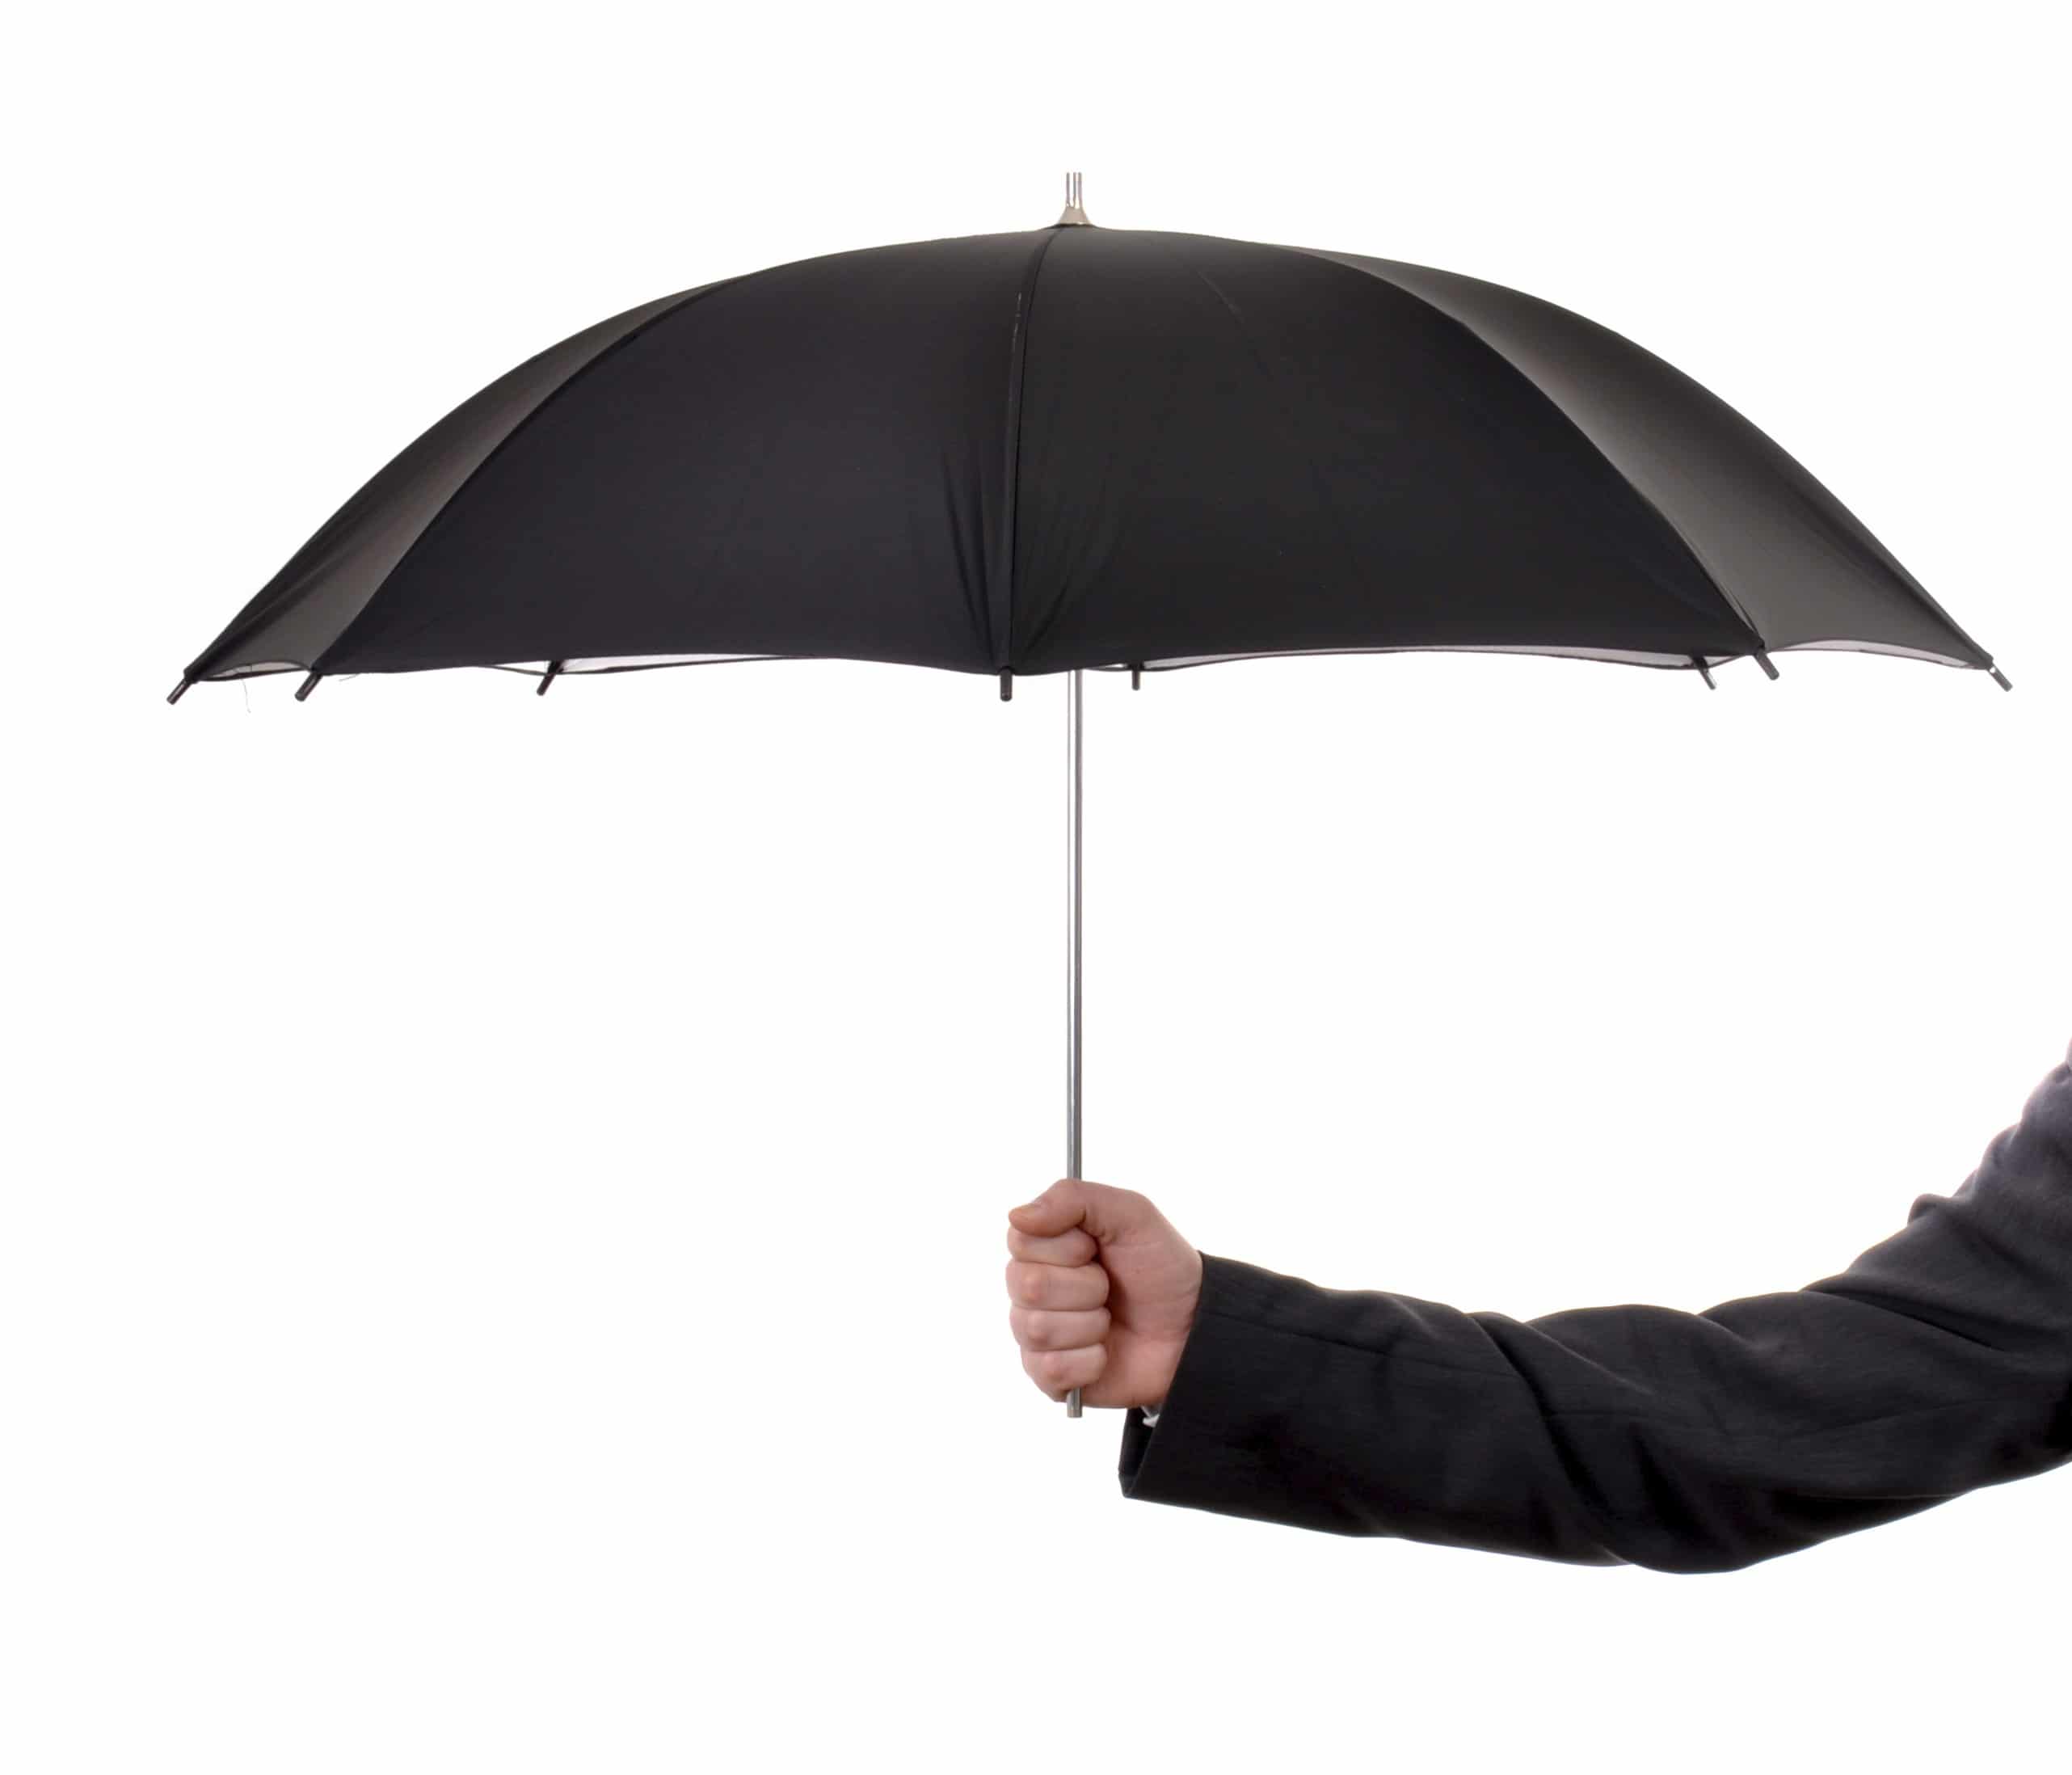 Зонтик рост. Держит зонтик. Мужчина с зонтом. Зонт в руке. Рука держит зонт.